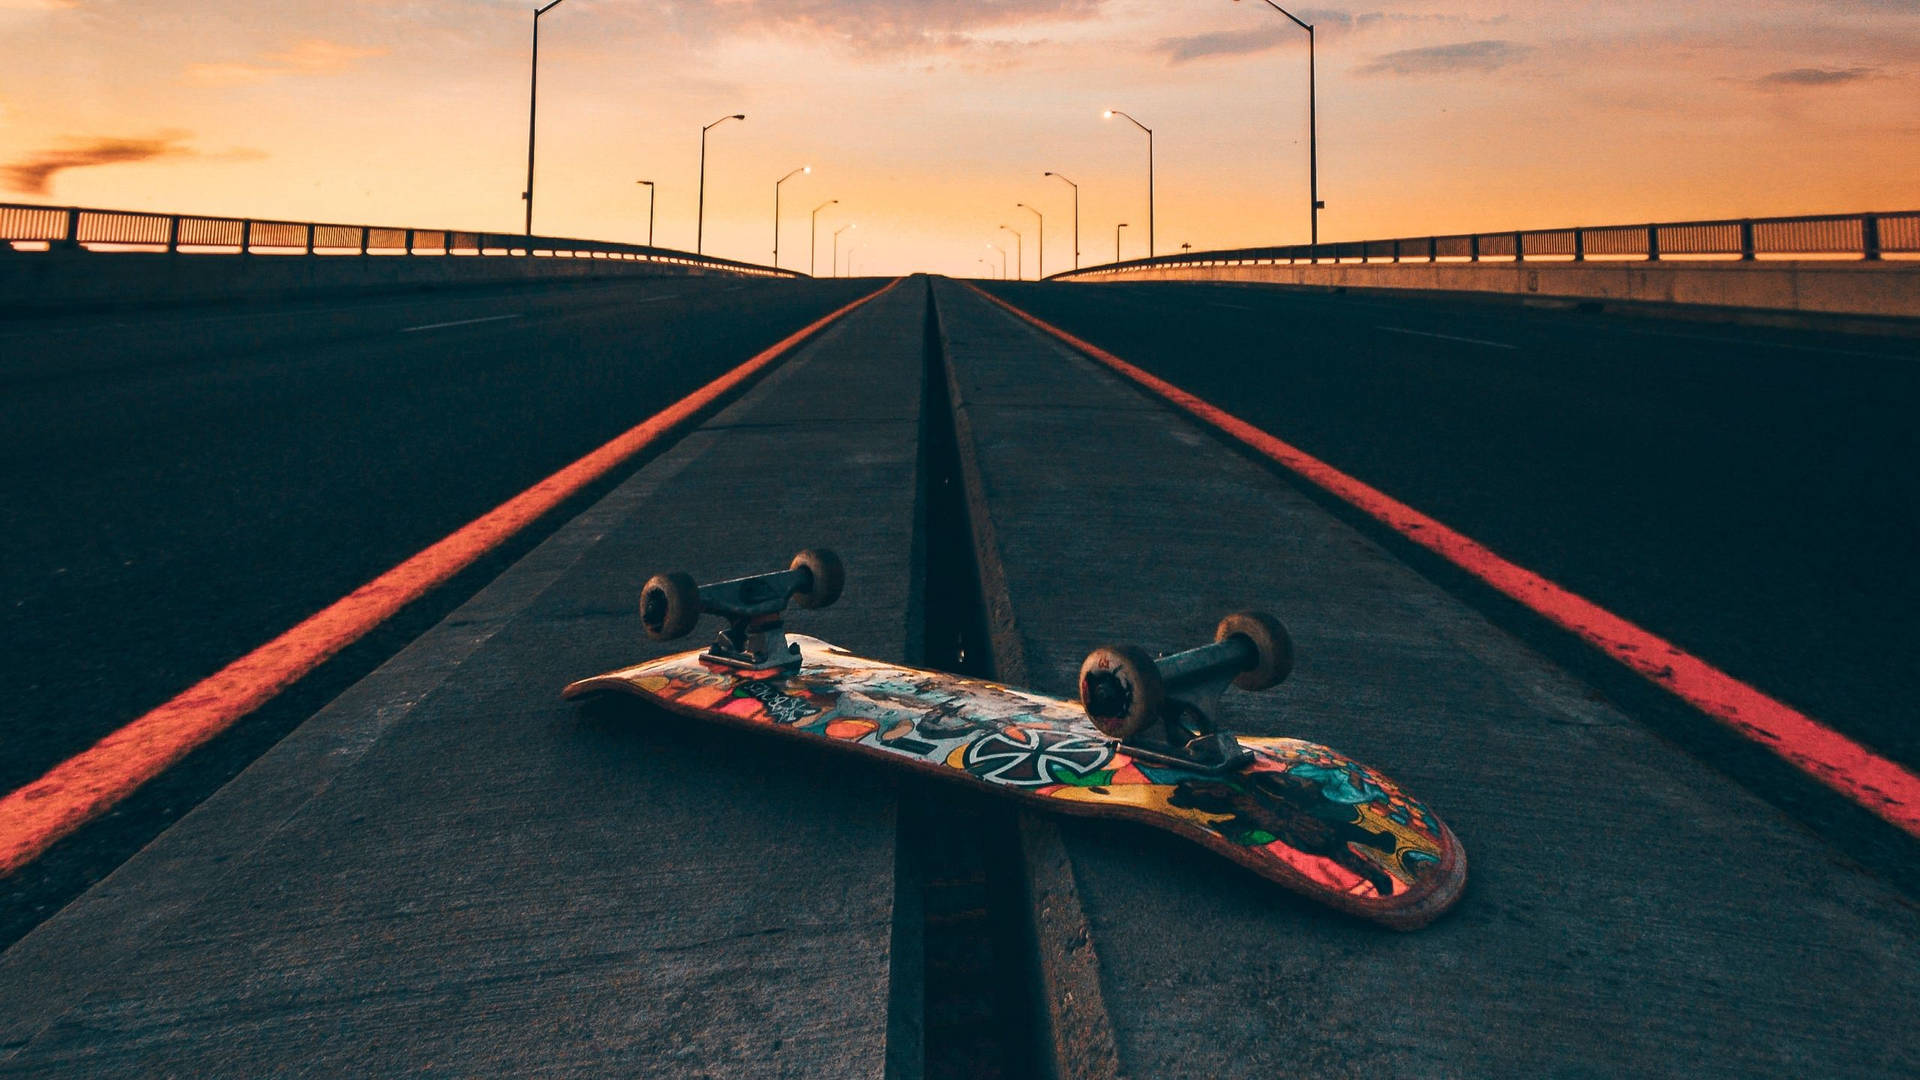 Flipped Skateboard On Road At Sunset Skater Aesthetic Background